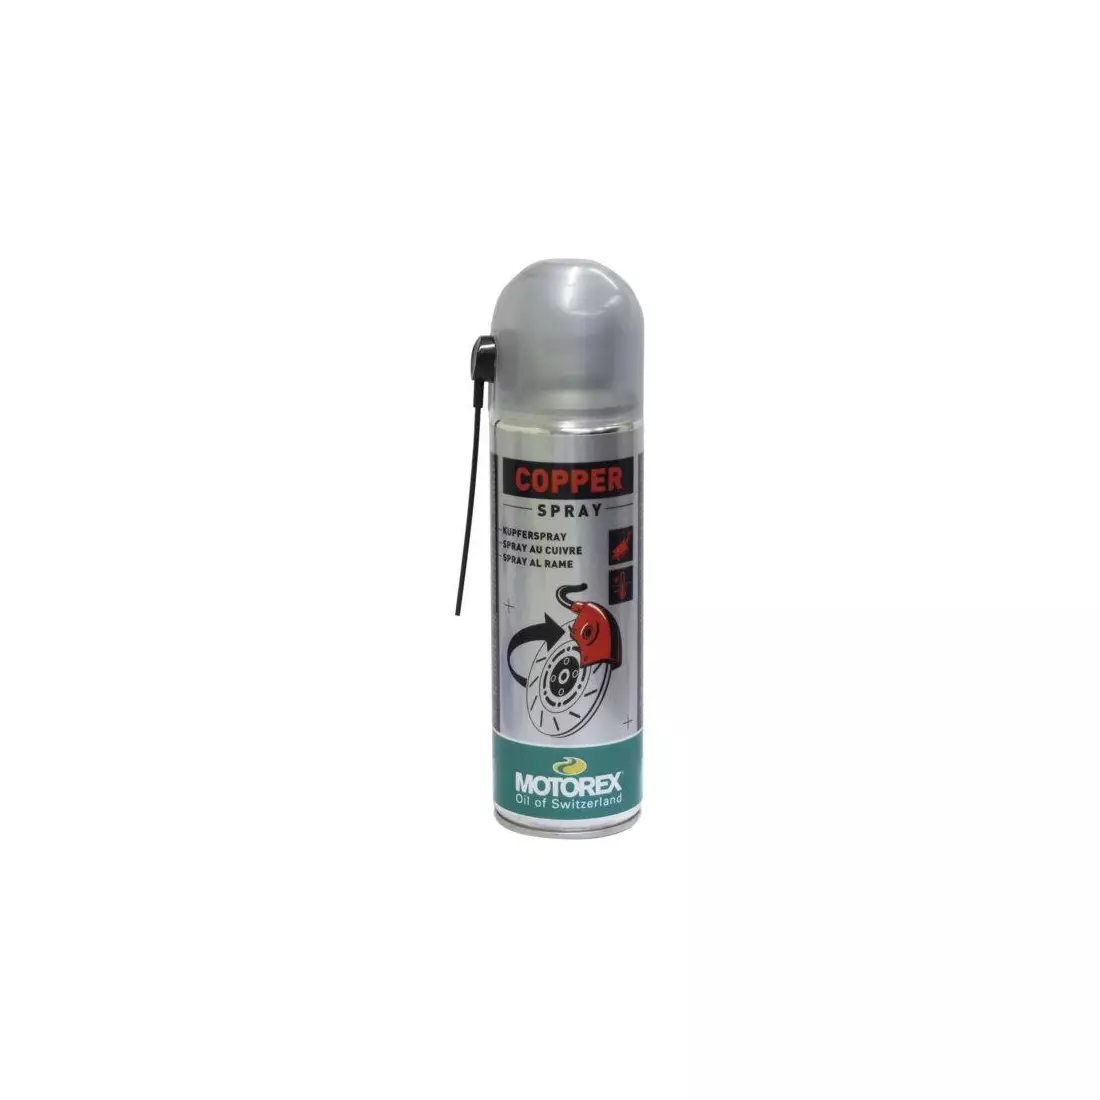 MOTOREX anti-corrosion spray COPPER 300ml